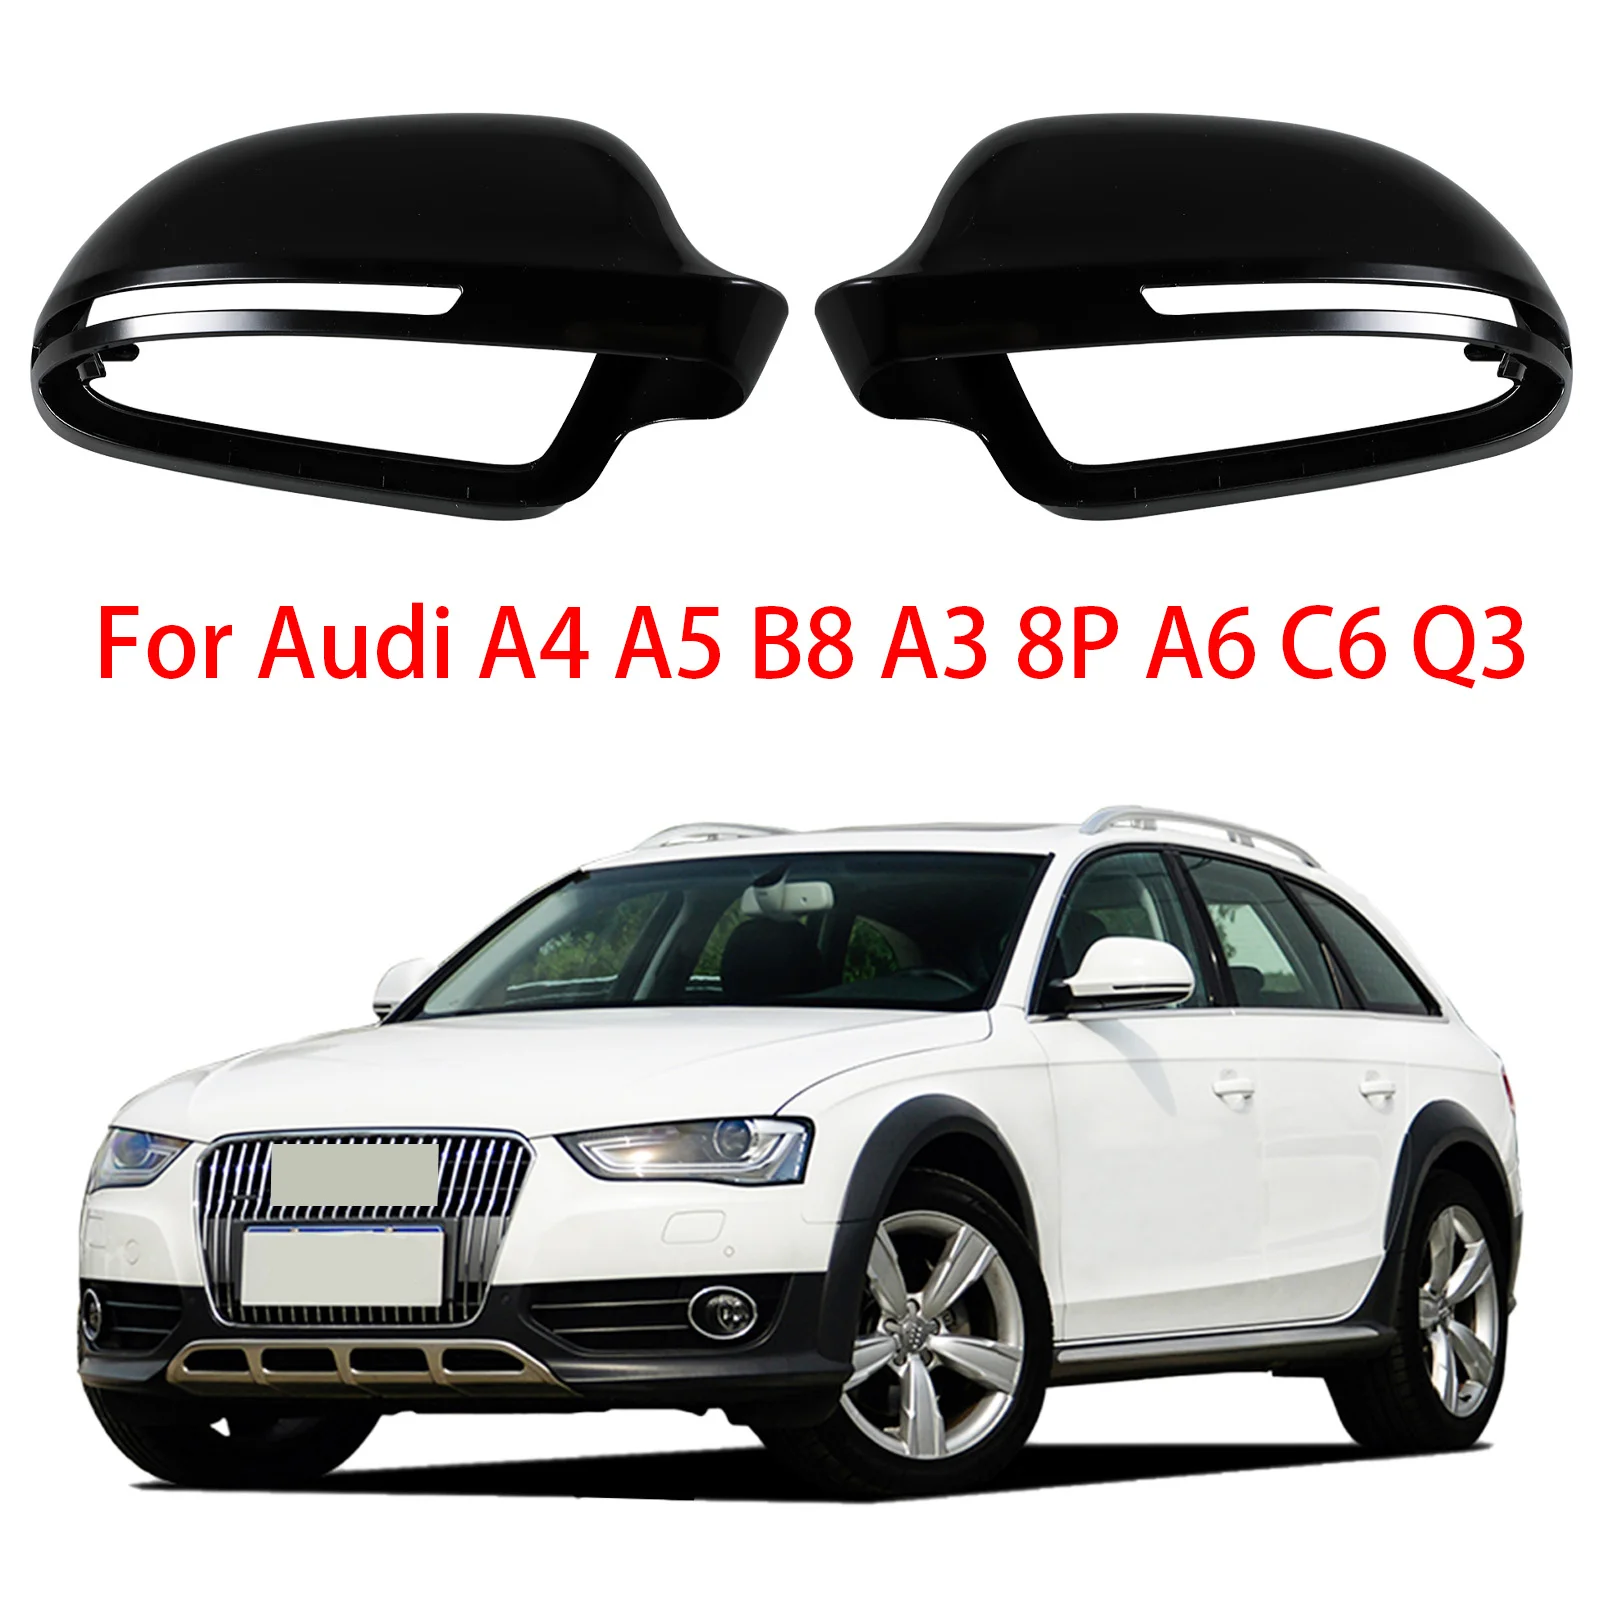 

Глянцевый черный полная замена автомобильных аксессуаров дверные боковые зеркала крышки зеркала заднего вида для Audi A4 A5 B8 A3 8P A6 C6 Q3